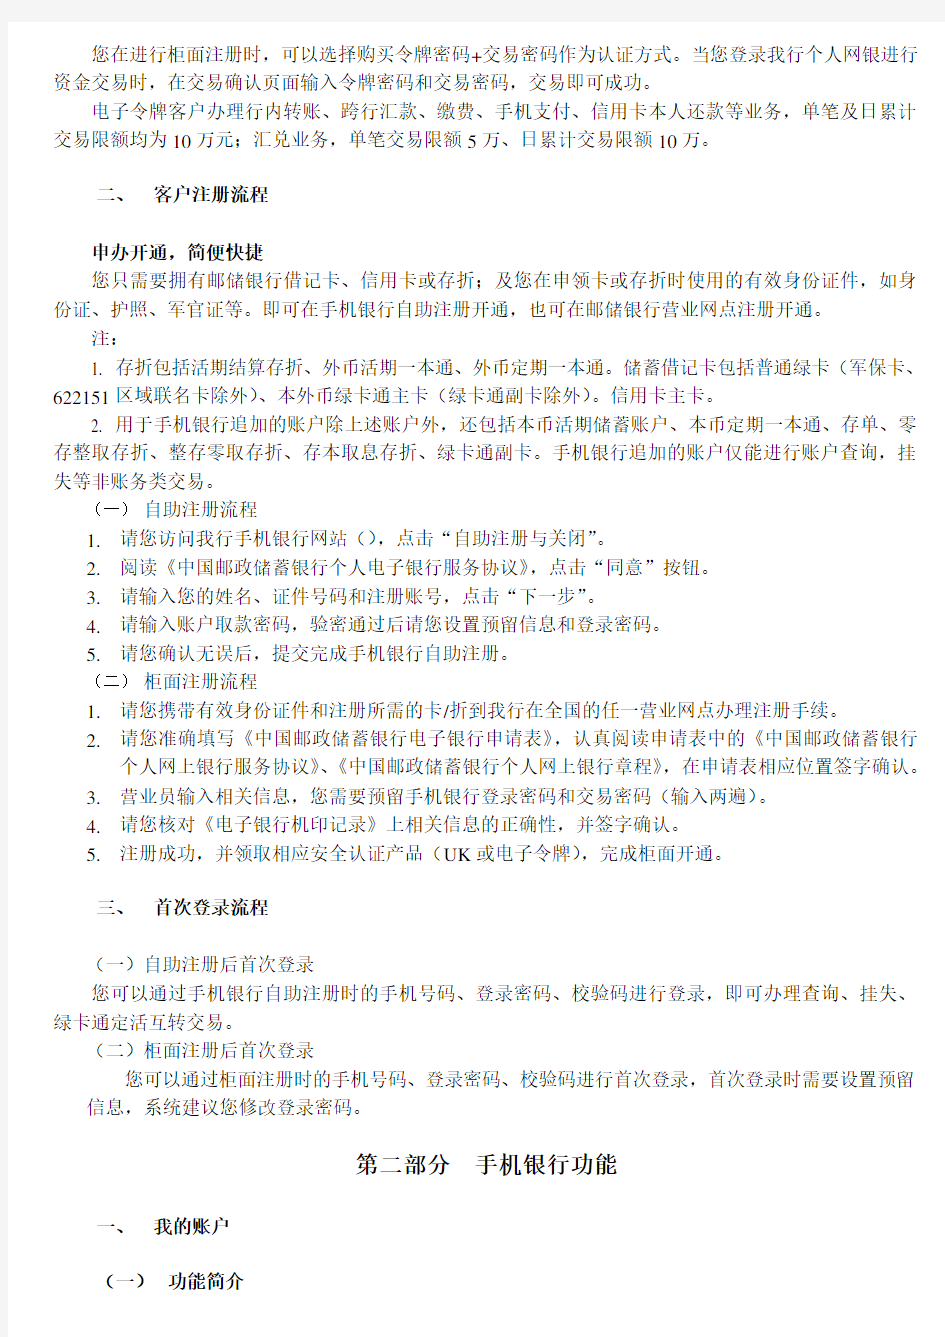 中国邮政储蓄银行手机银行客户操作指南